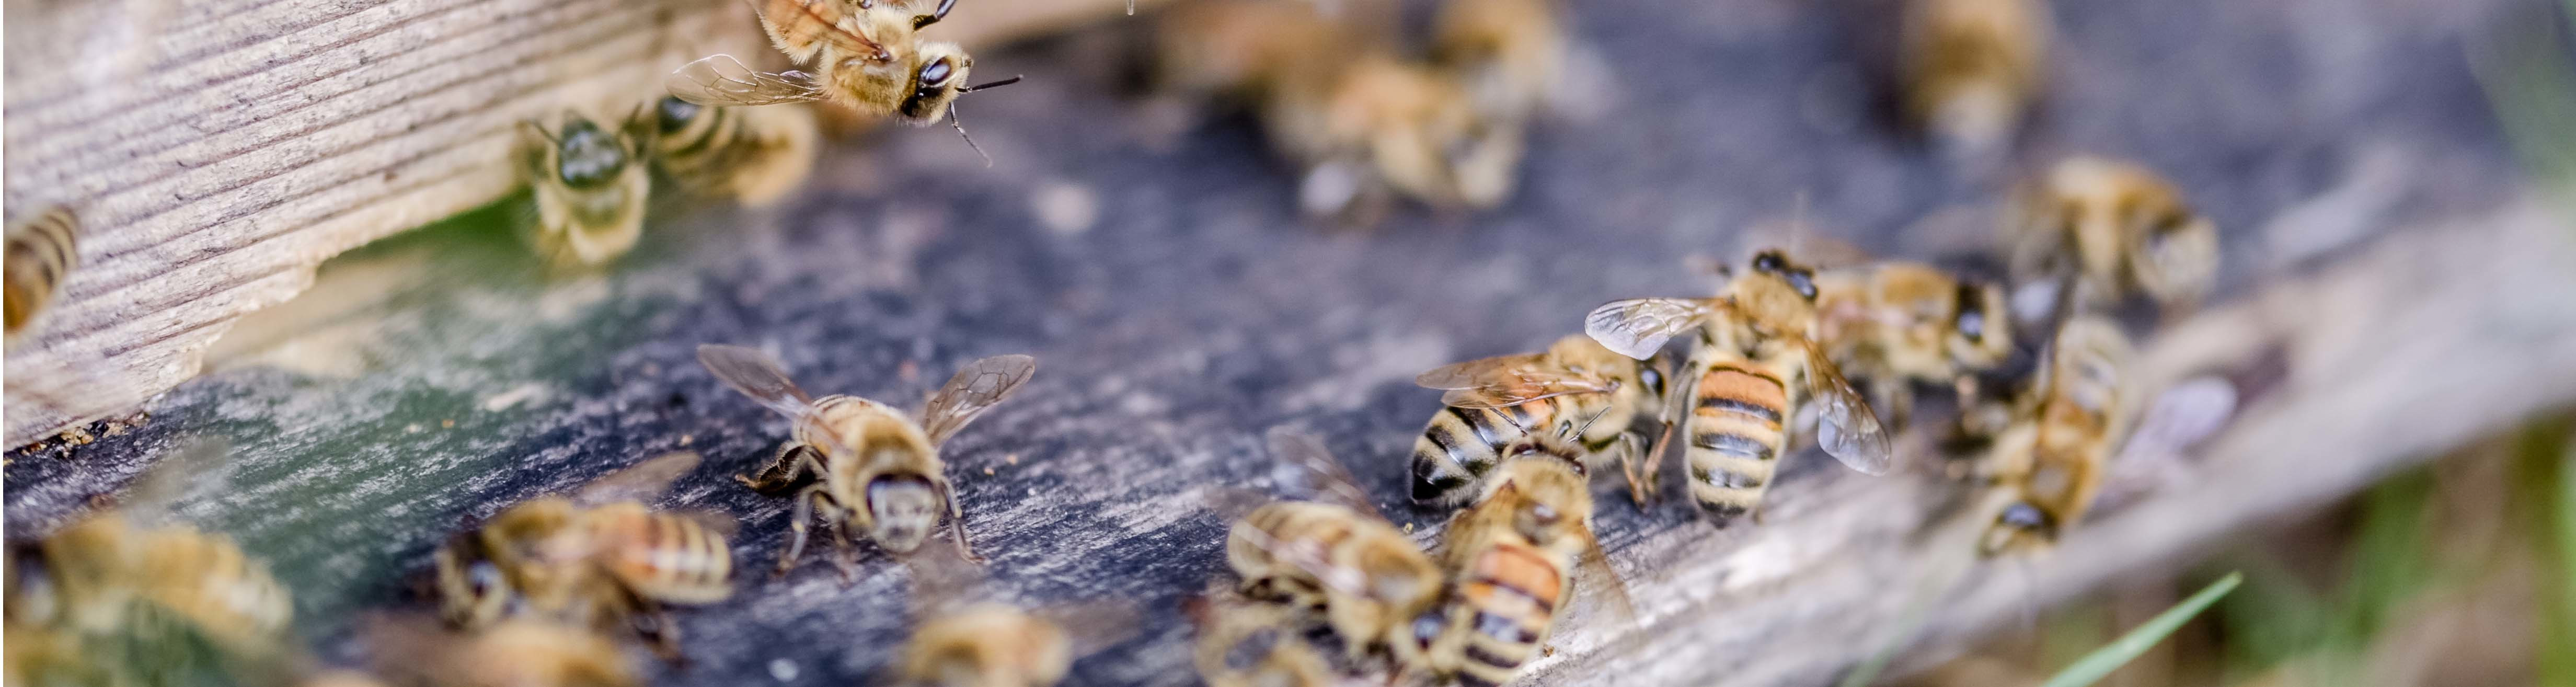 Bienen auf Celler Wanderboden